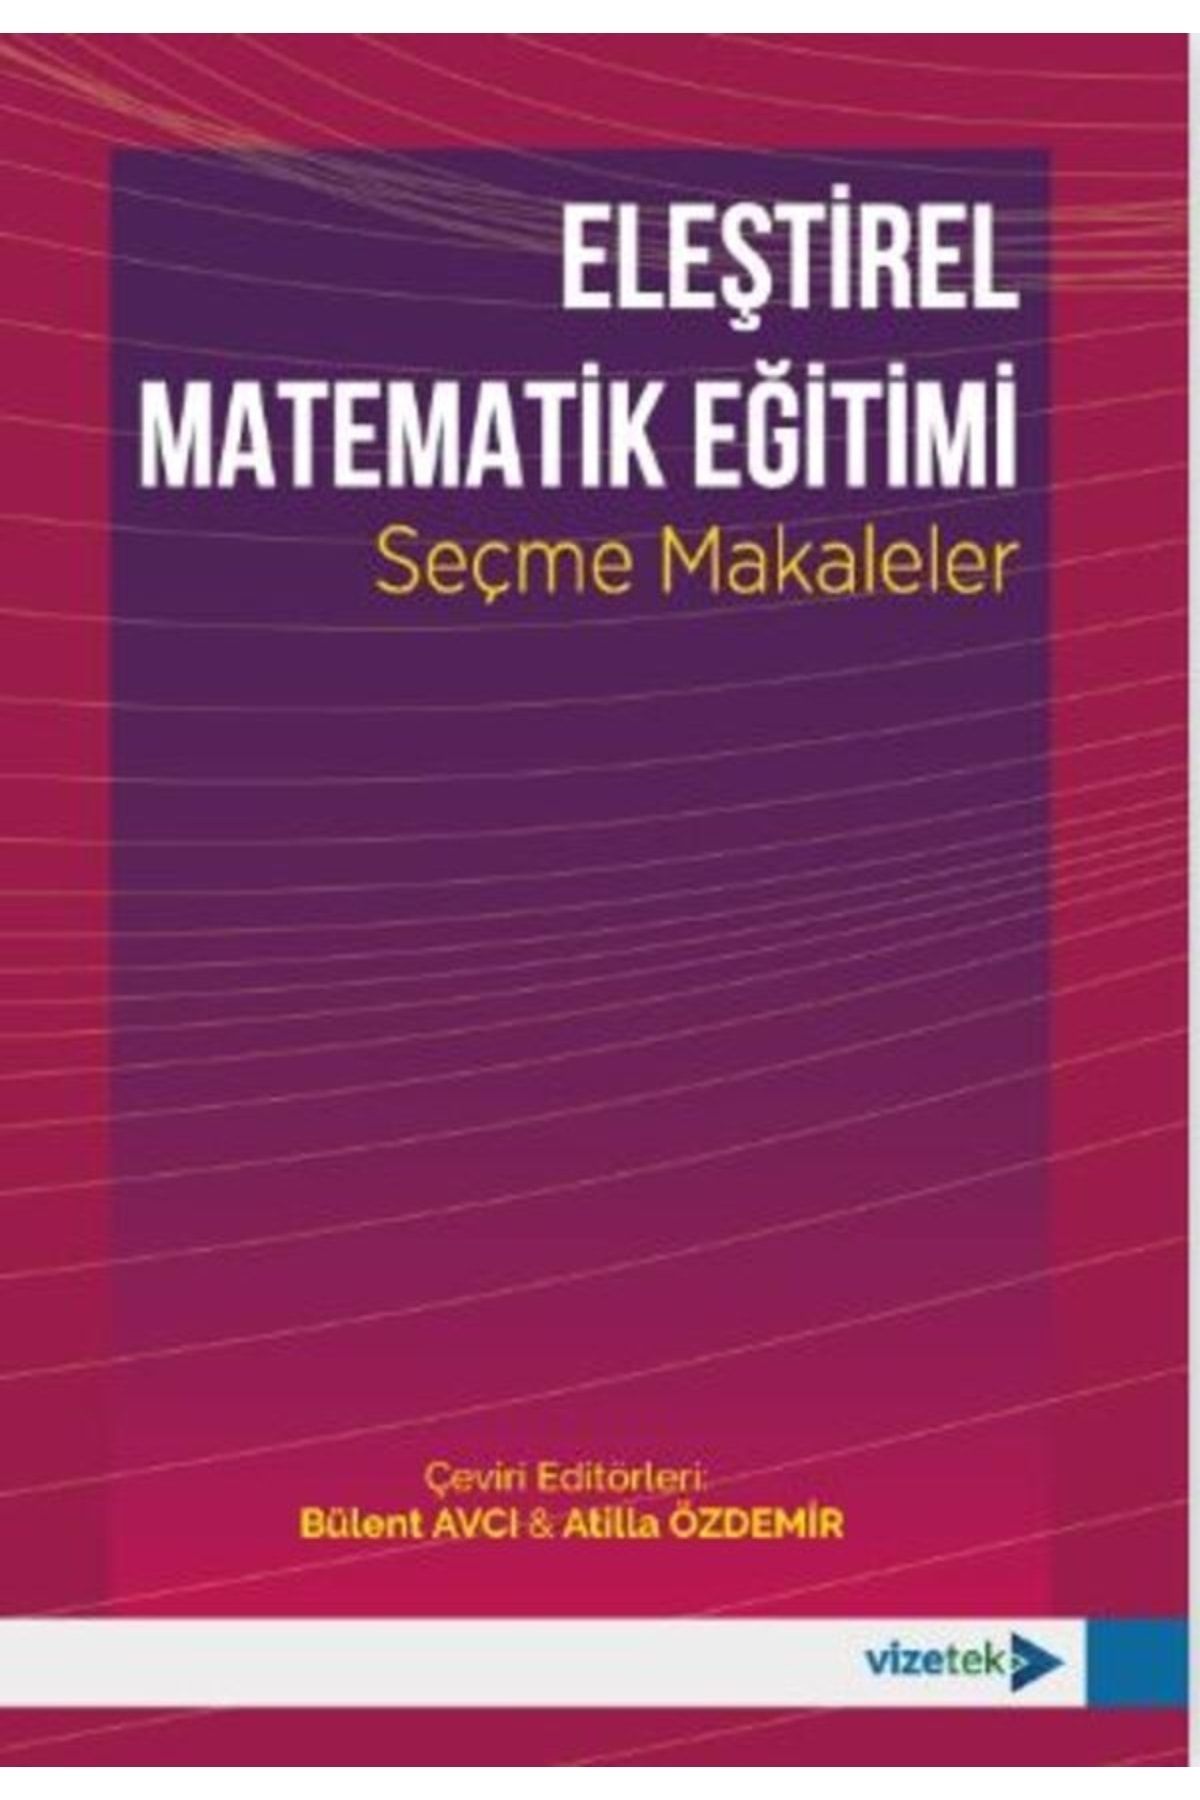 Vizetek Yayıncılık Eleştirel Matematik Eğitimi (seçme Makaleler)